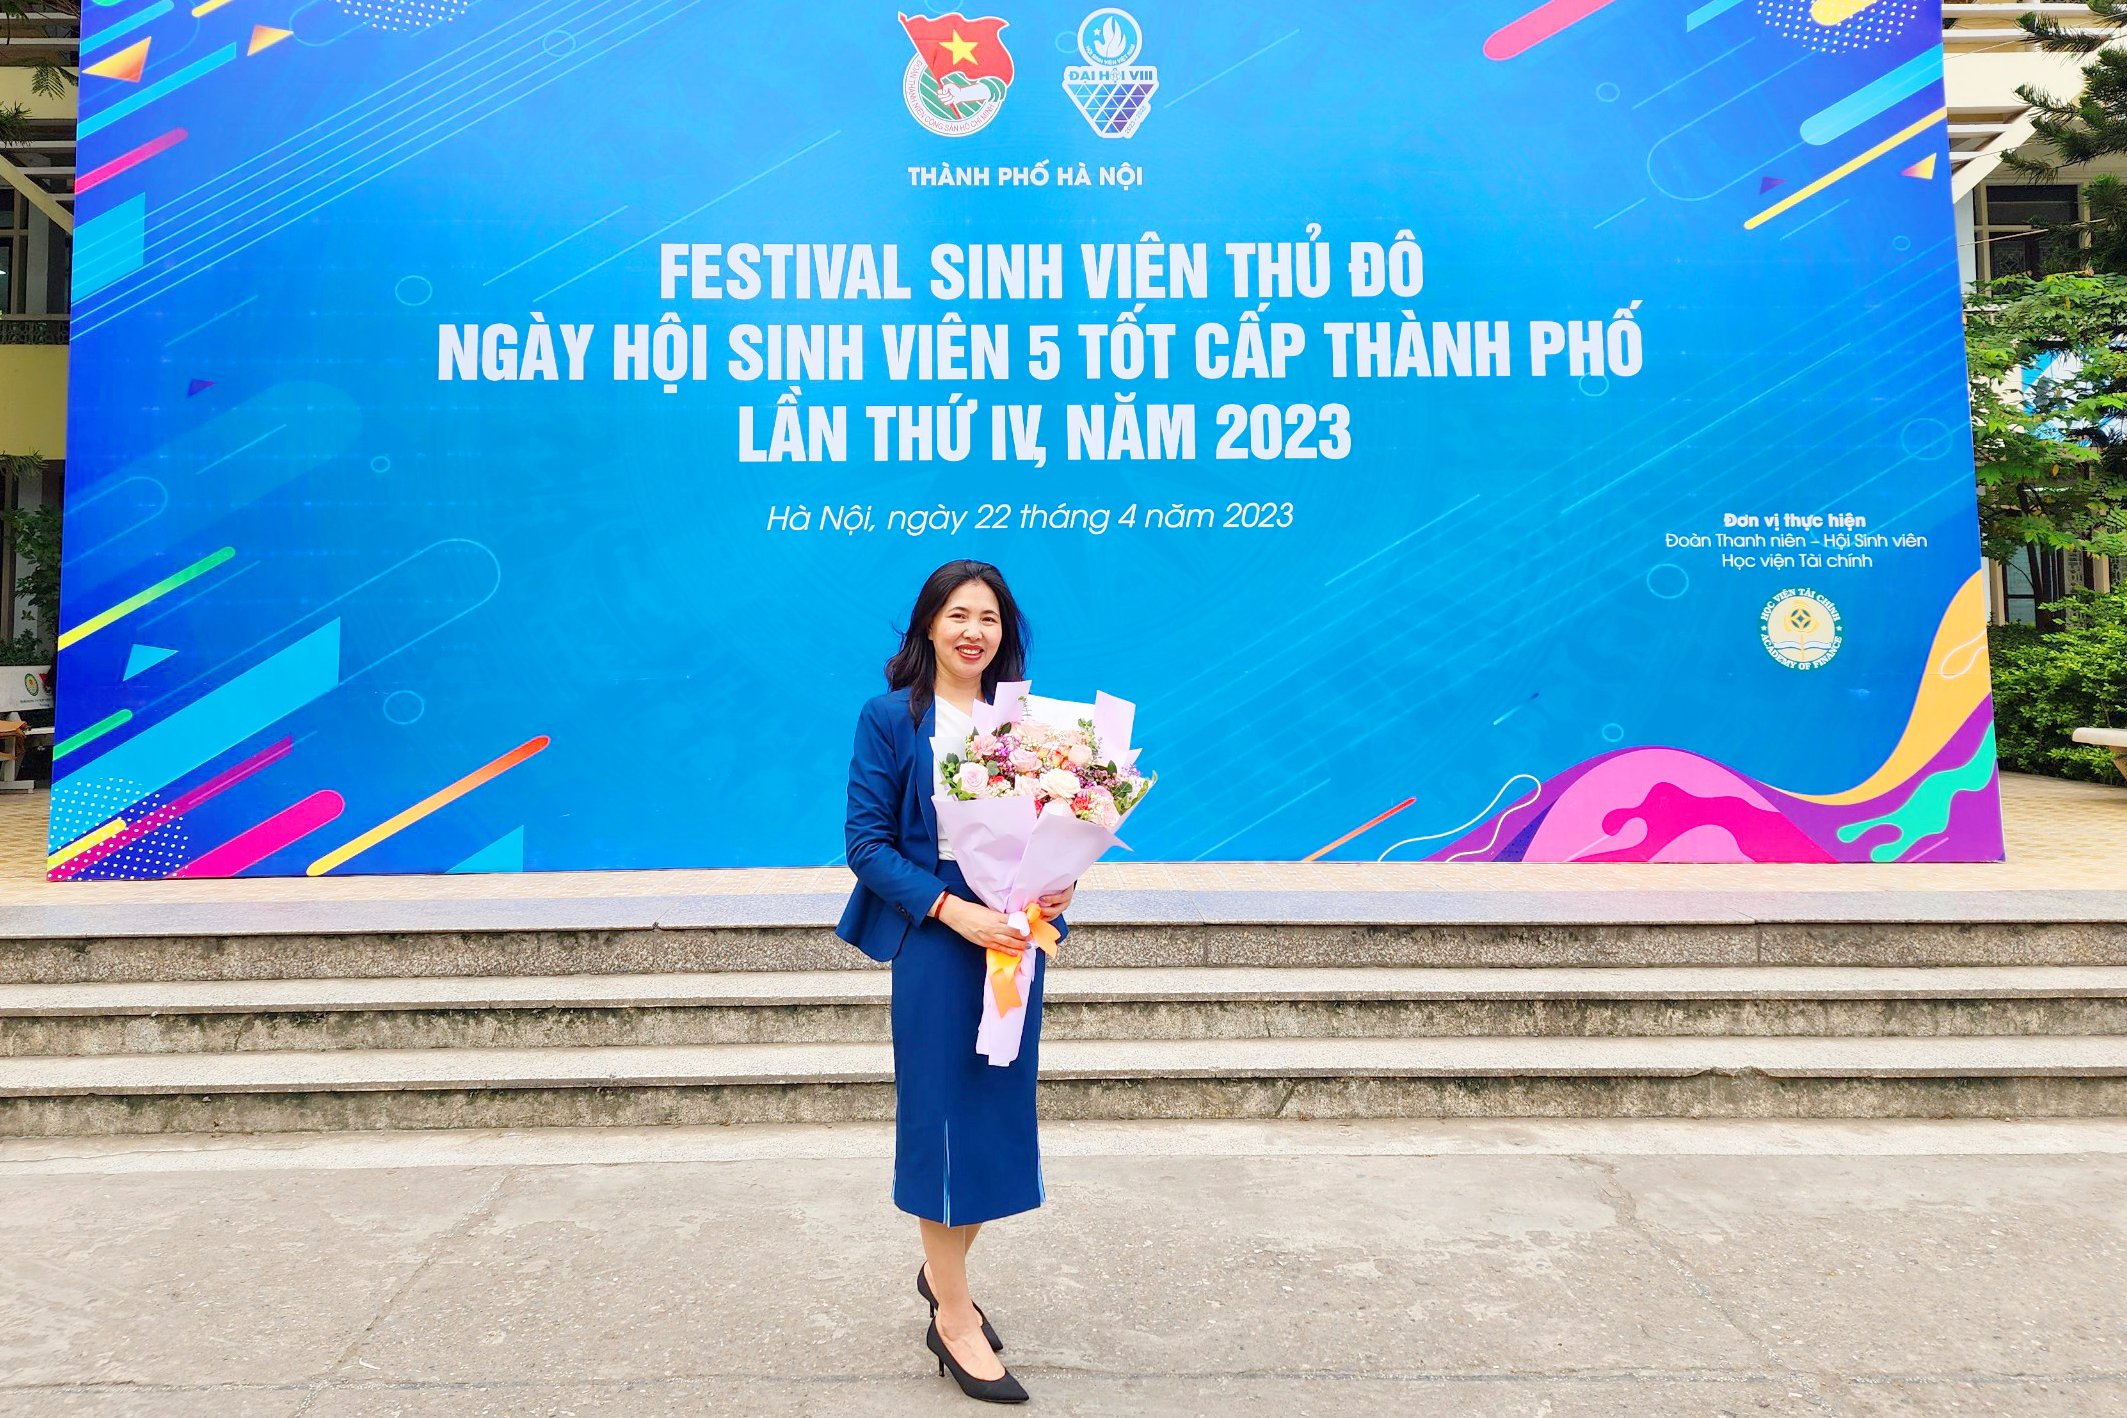 TS. Dương Thu tham dự tọa đàm "Tư vấn kỹ năng, hỗ trợ sinh viên xin việc, định hướng việc làm" thuộc Festival Sinh viên Thủ đô